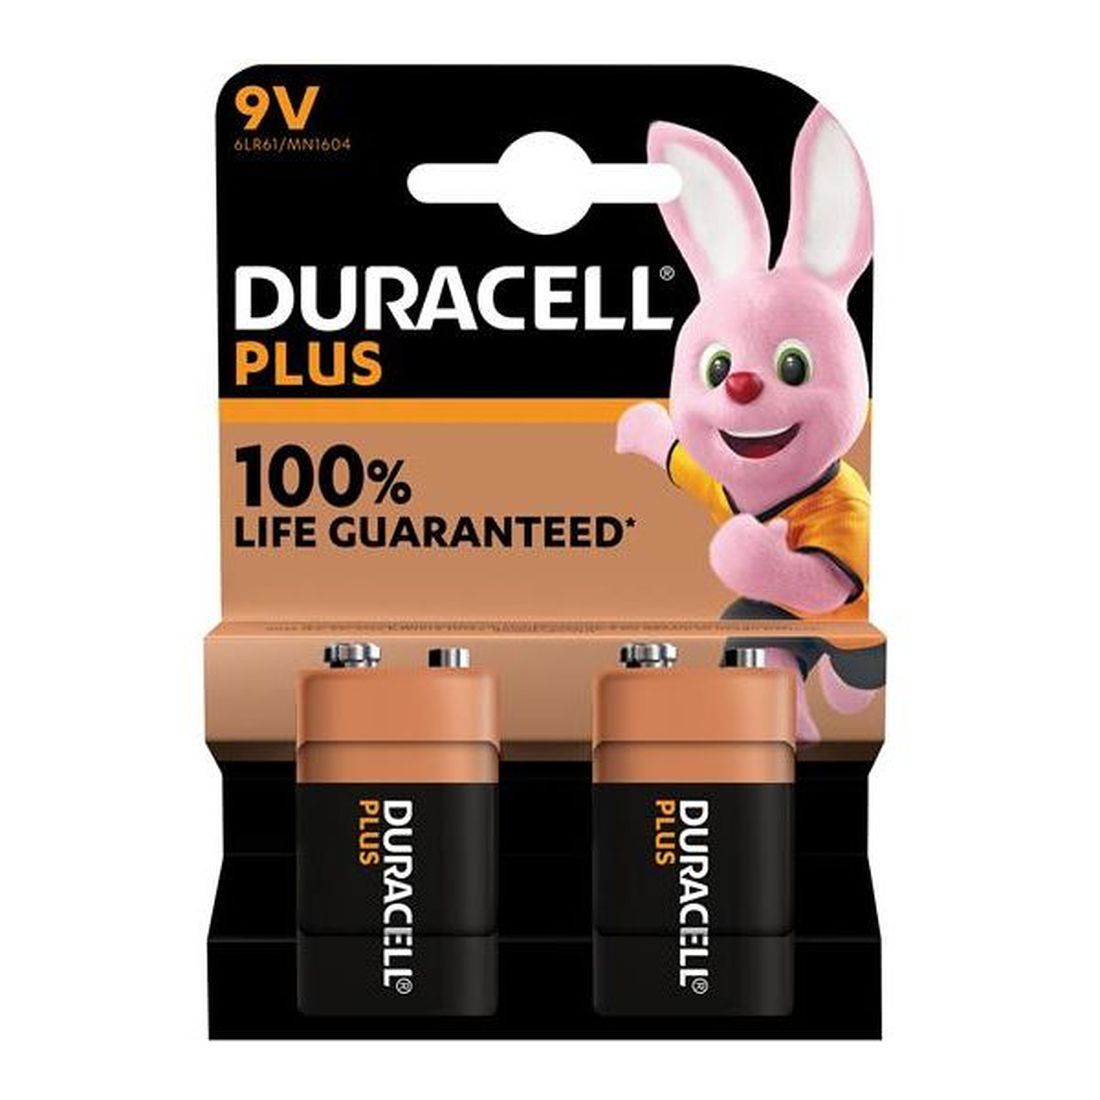 Duracell 9V Plus Power +100% Batteries (Pack 2)                                          